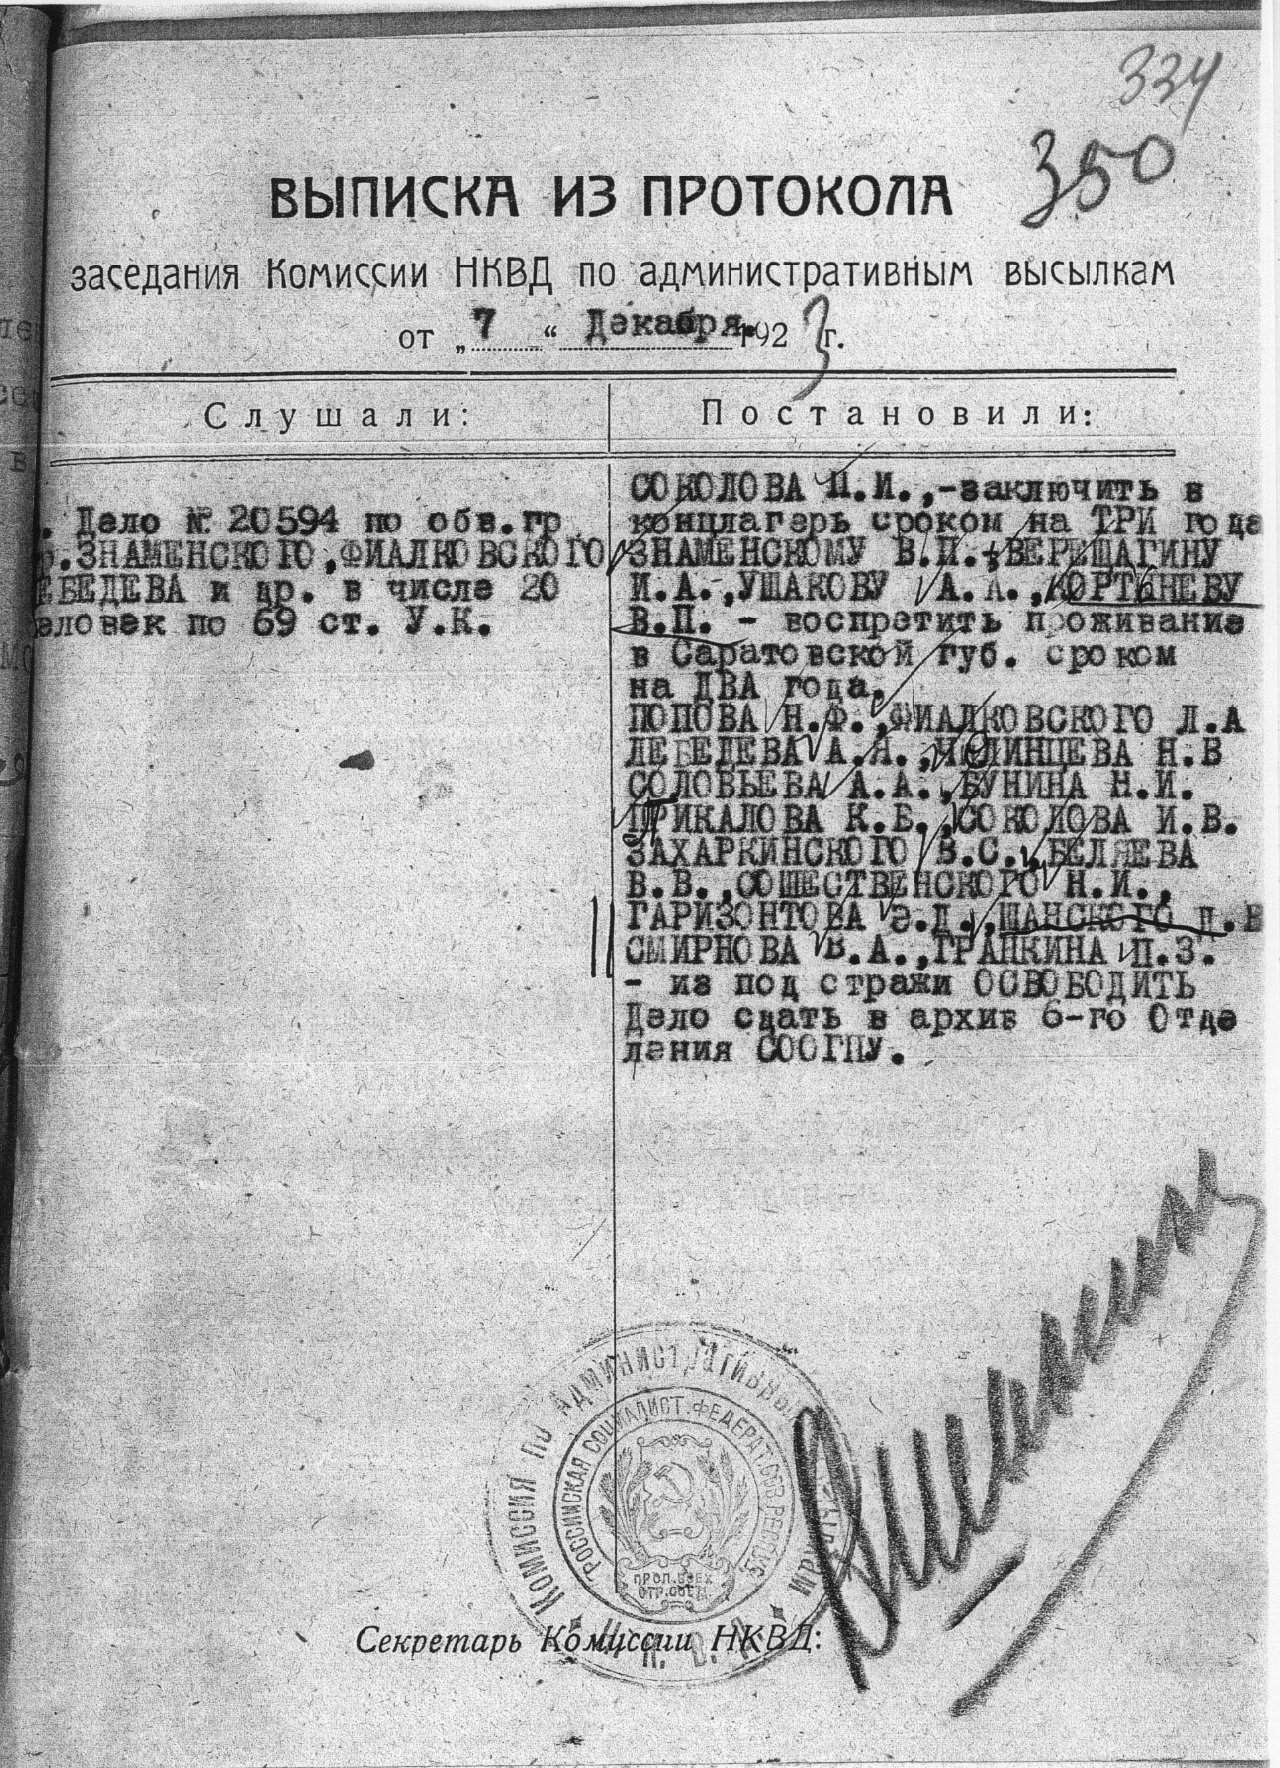  Выписка из протокола заседания Комиссии НКВД по административным высылкам